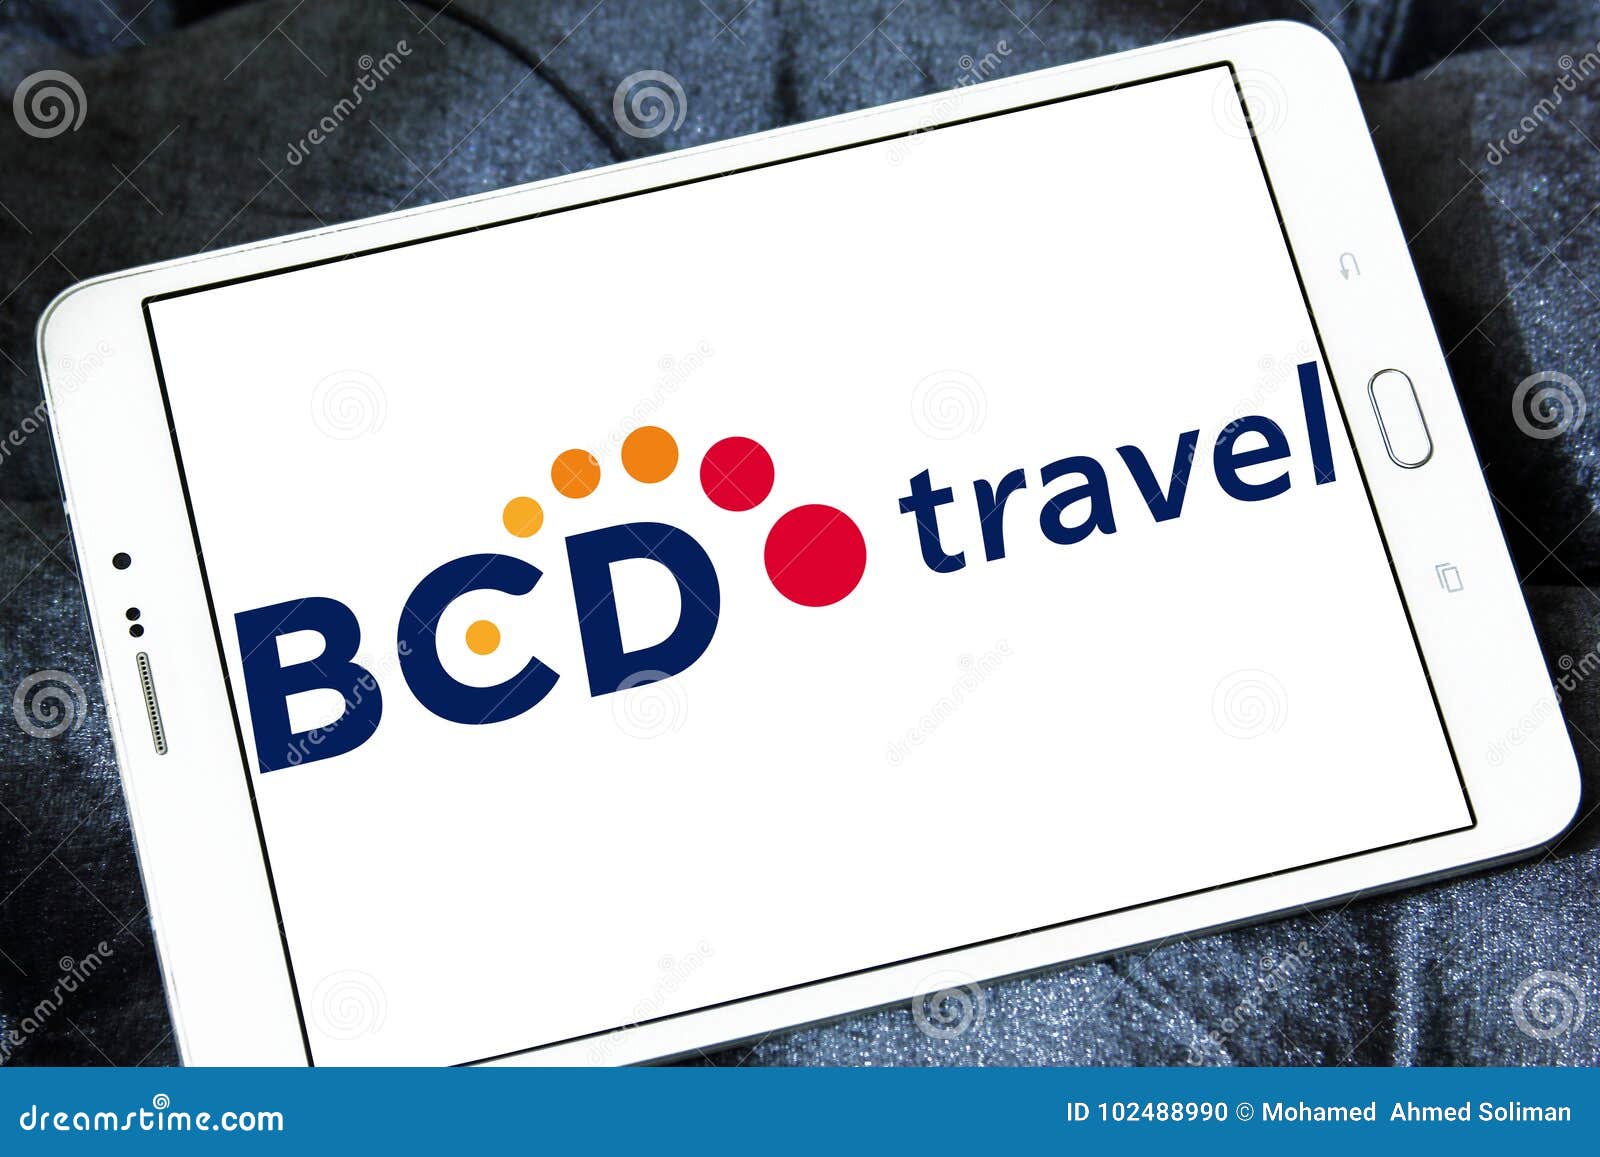 bcd travel company